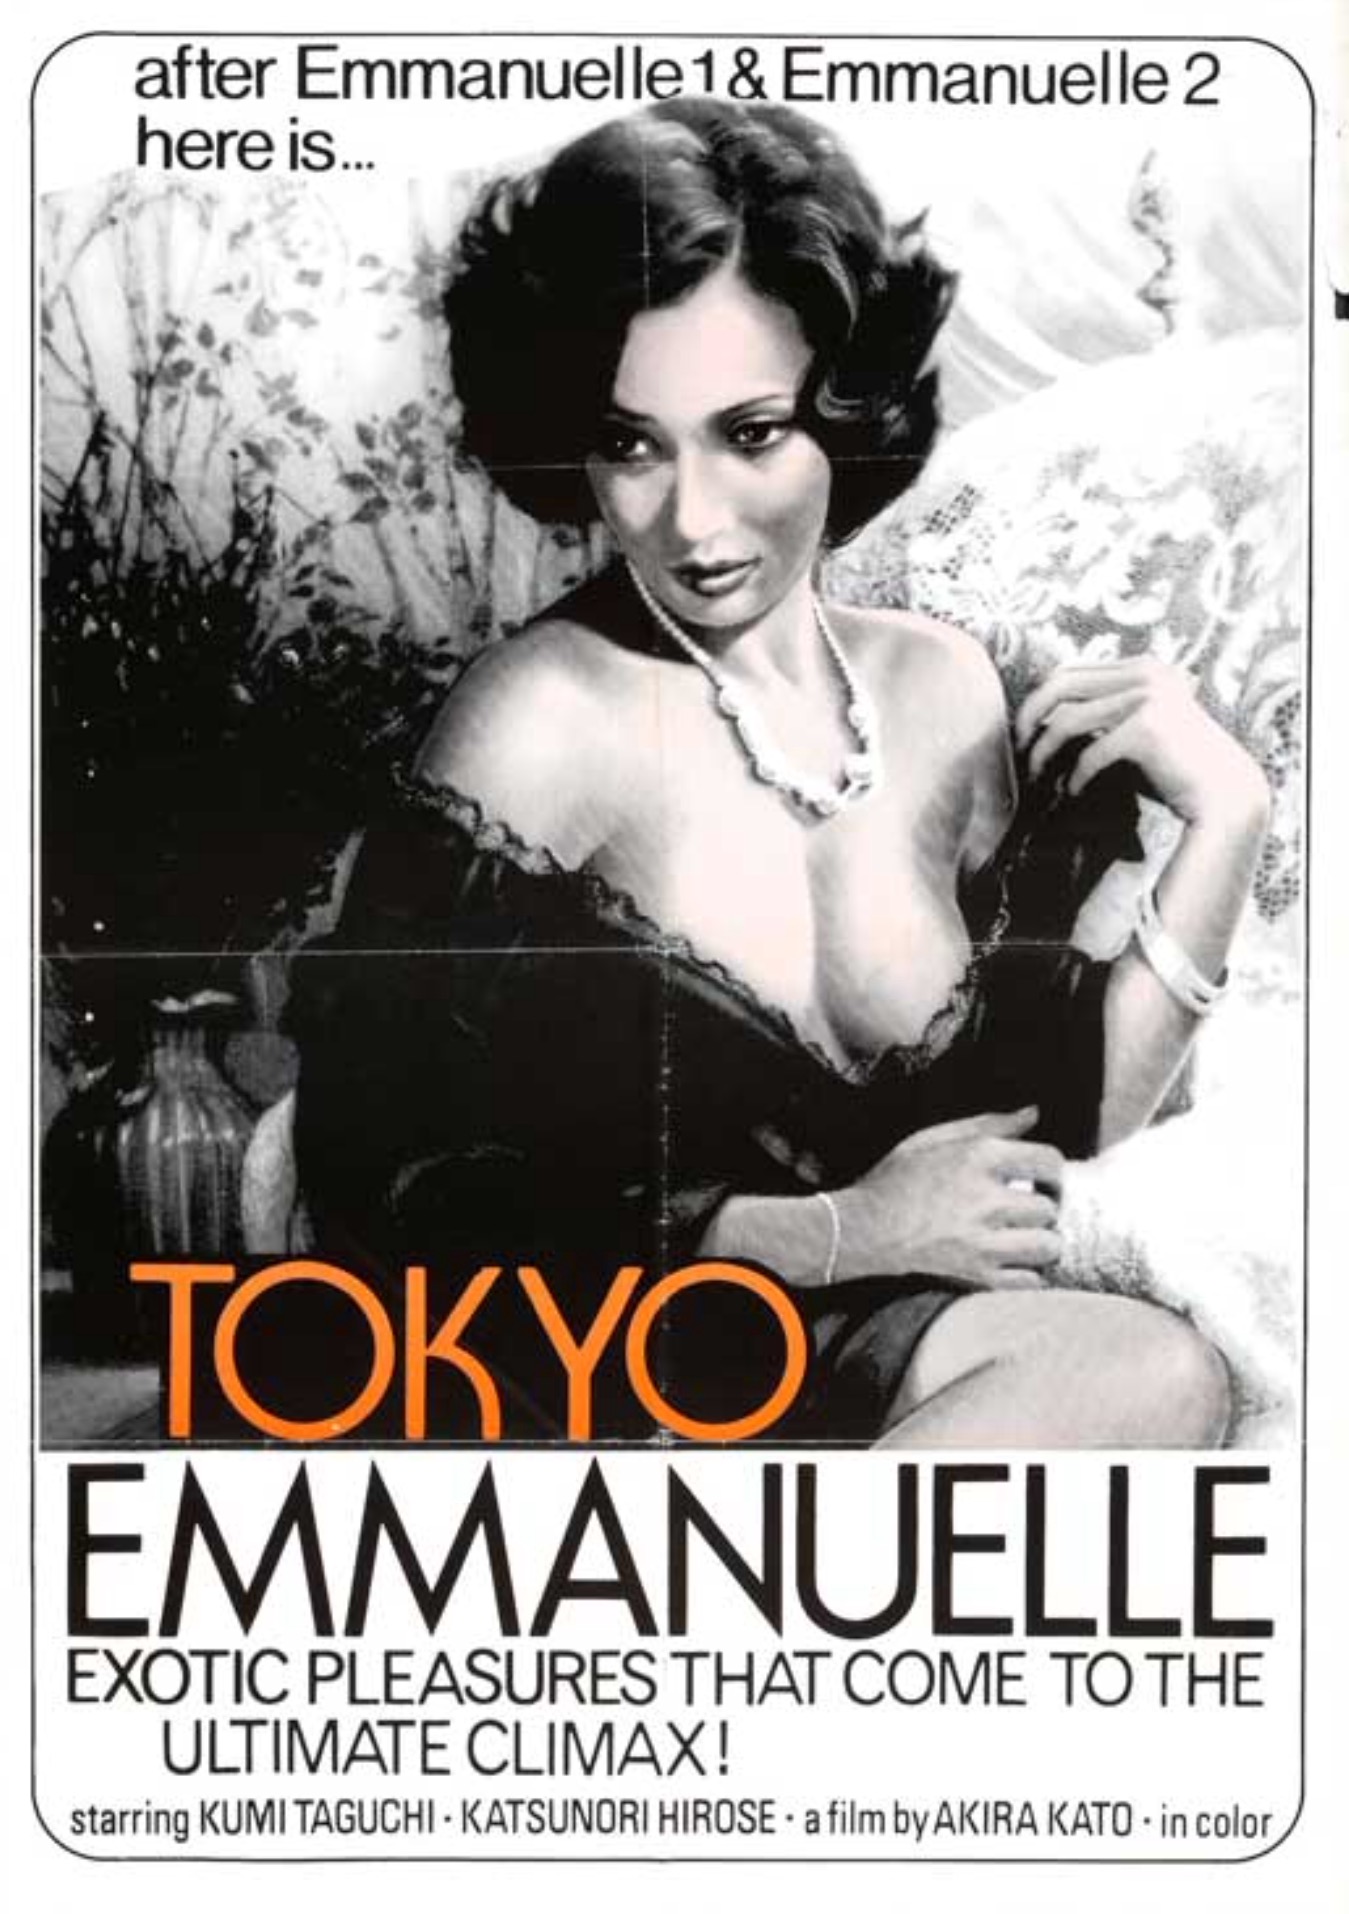 Tokyo Emanuelle